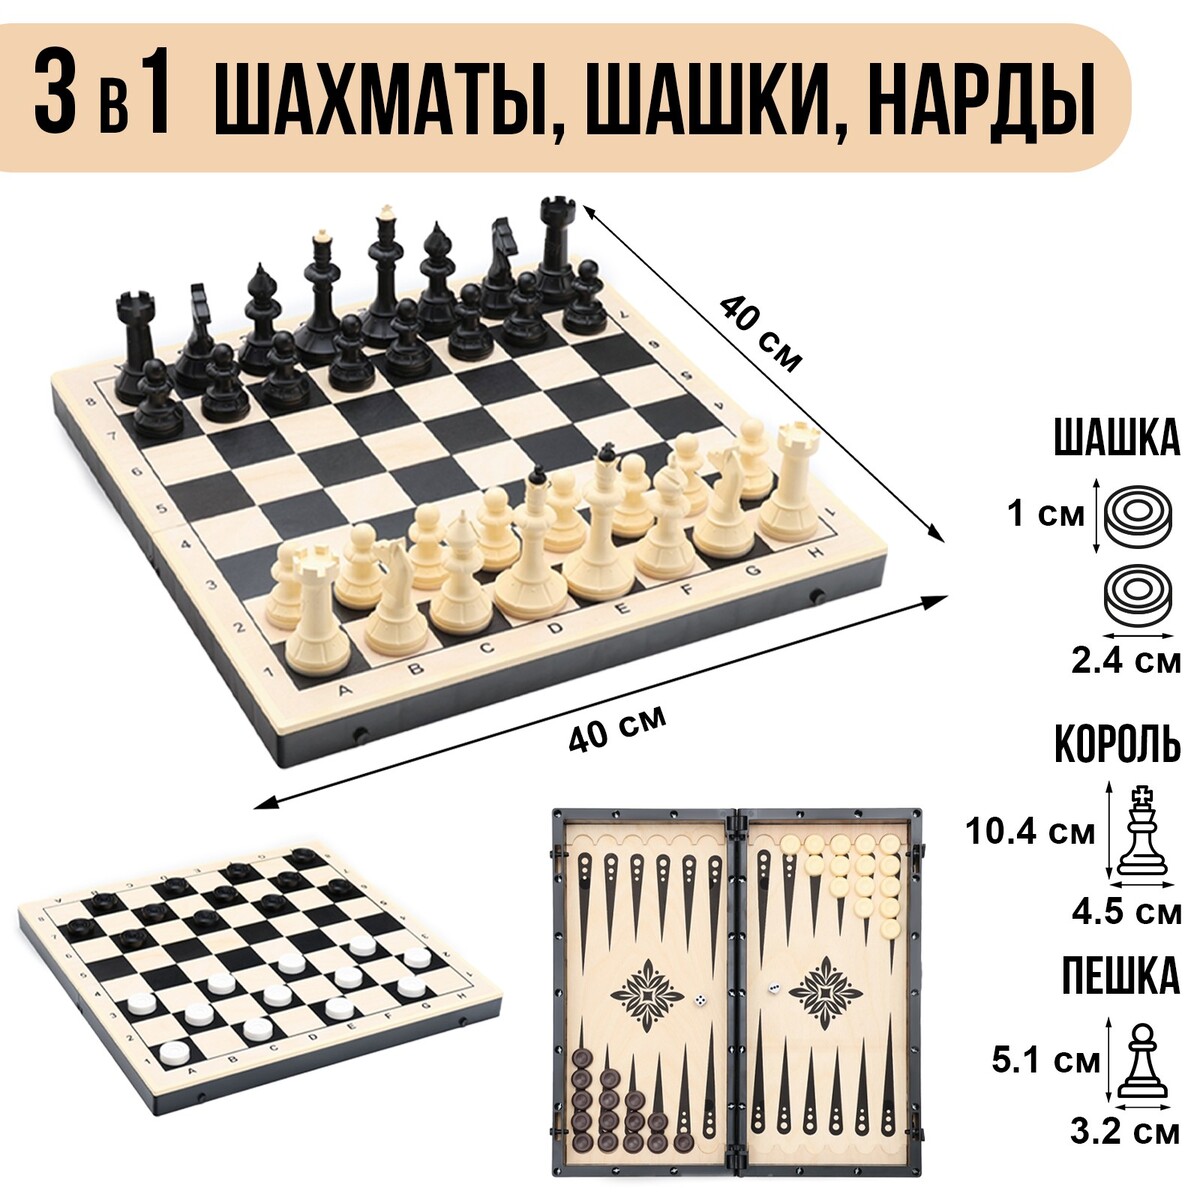 Игра настольная 3в1: шахматы, шашки, нарды 40х40 см, король h=10 см шахматы гроссмейстерские турнирные 43 х 43 см фигуры пластик король 10 5 см пешка 5 см